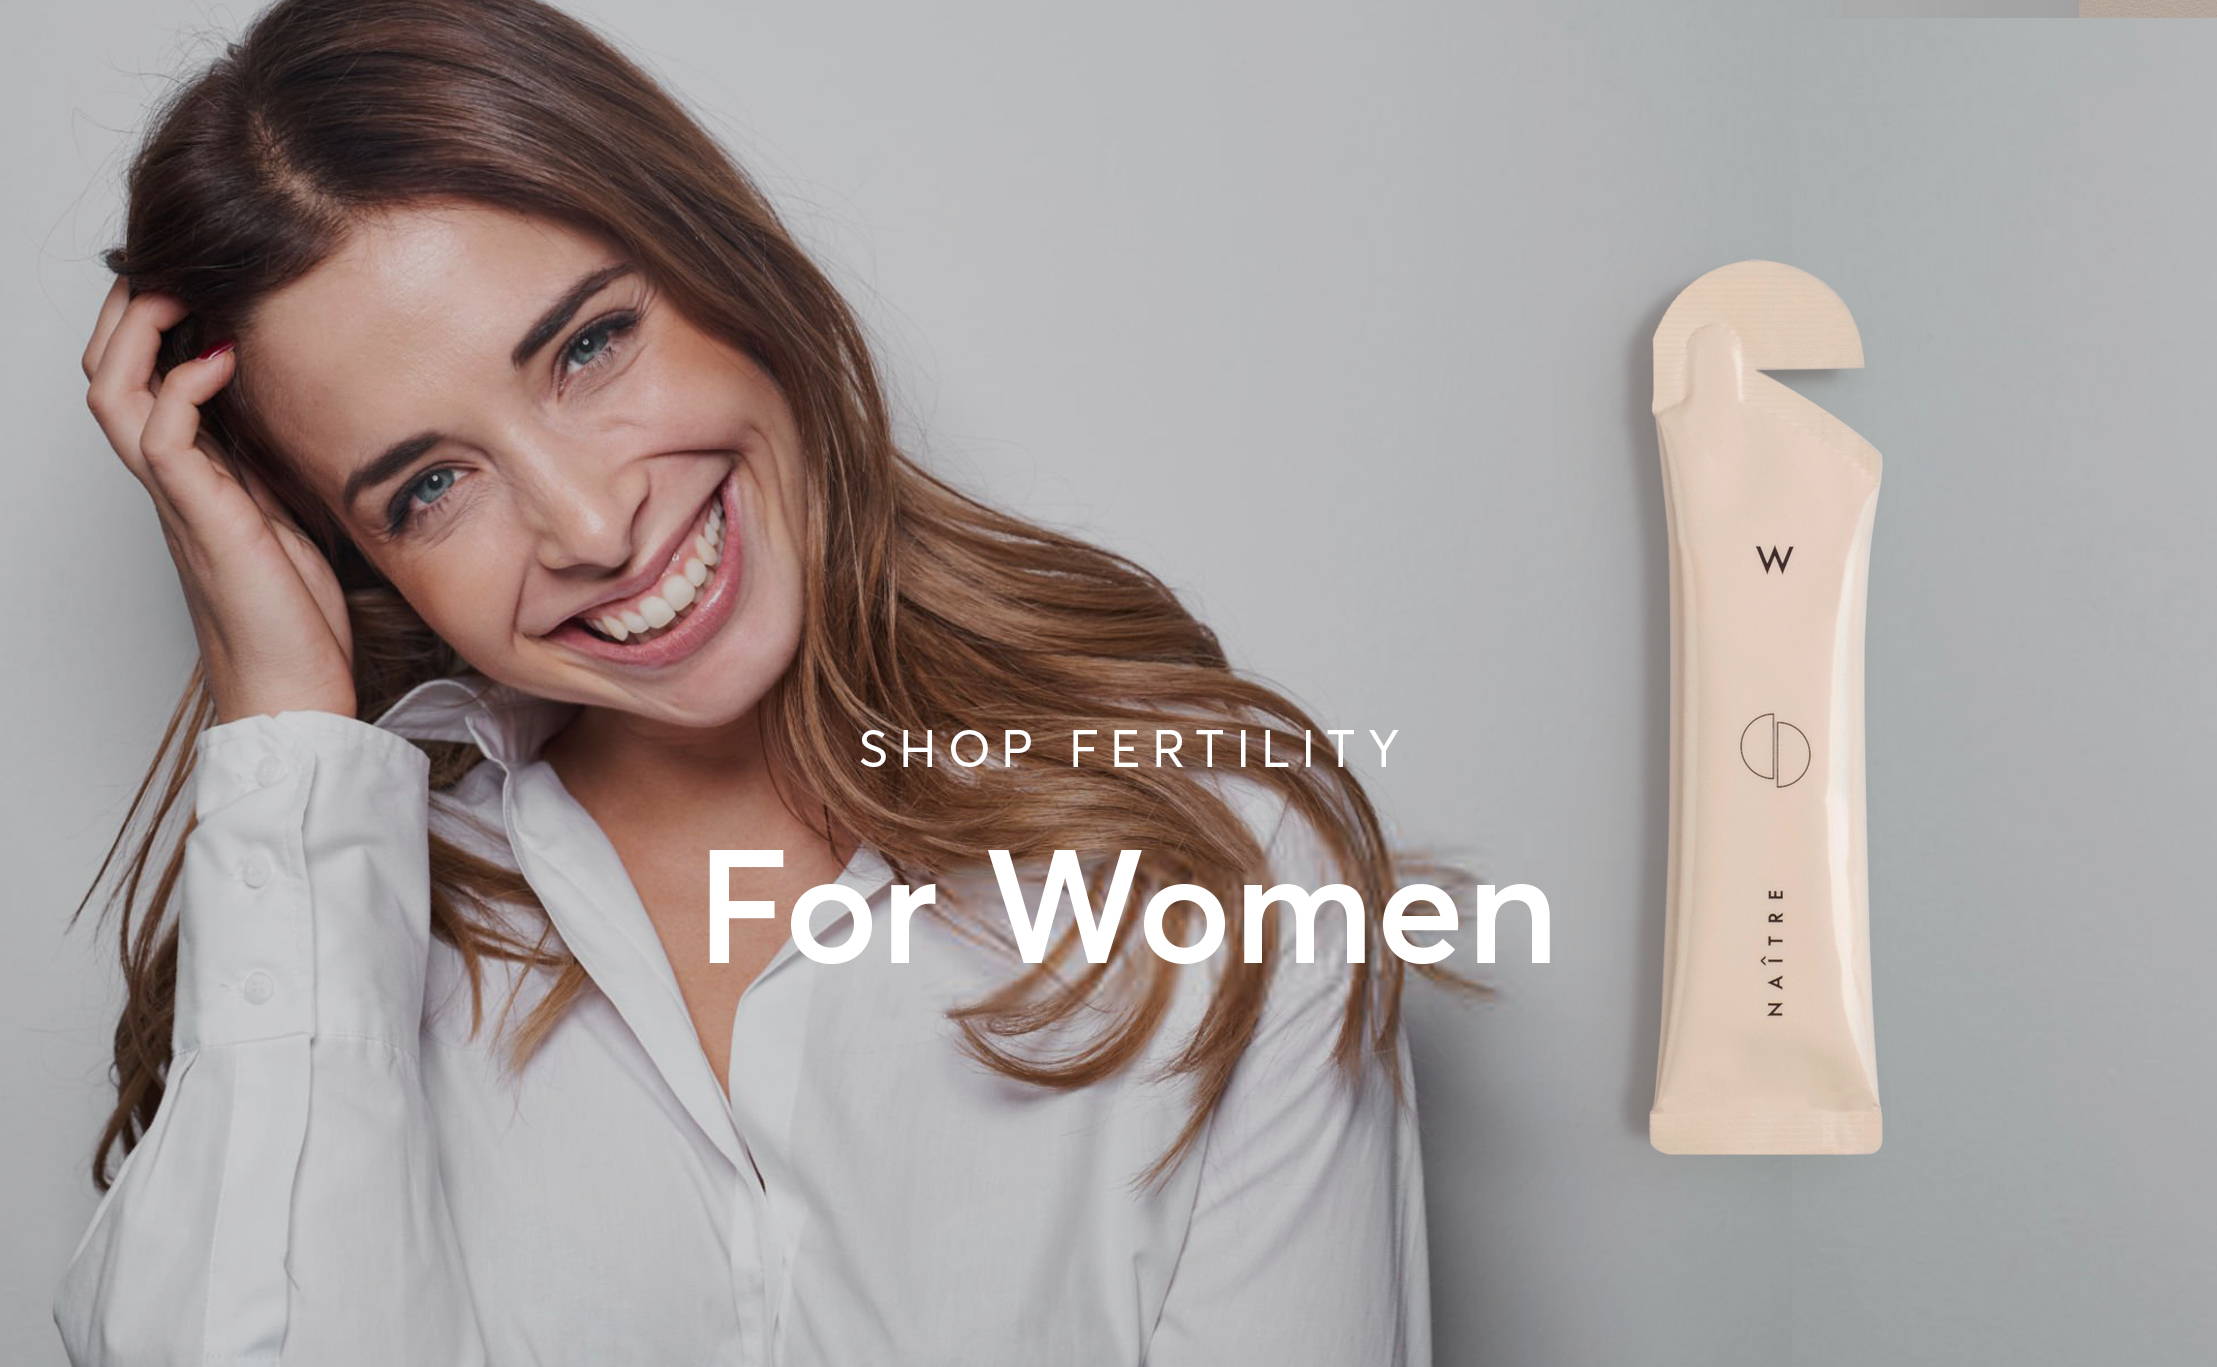 Shop Fertility For Women